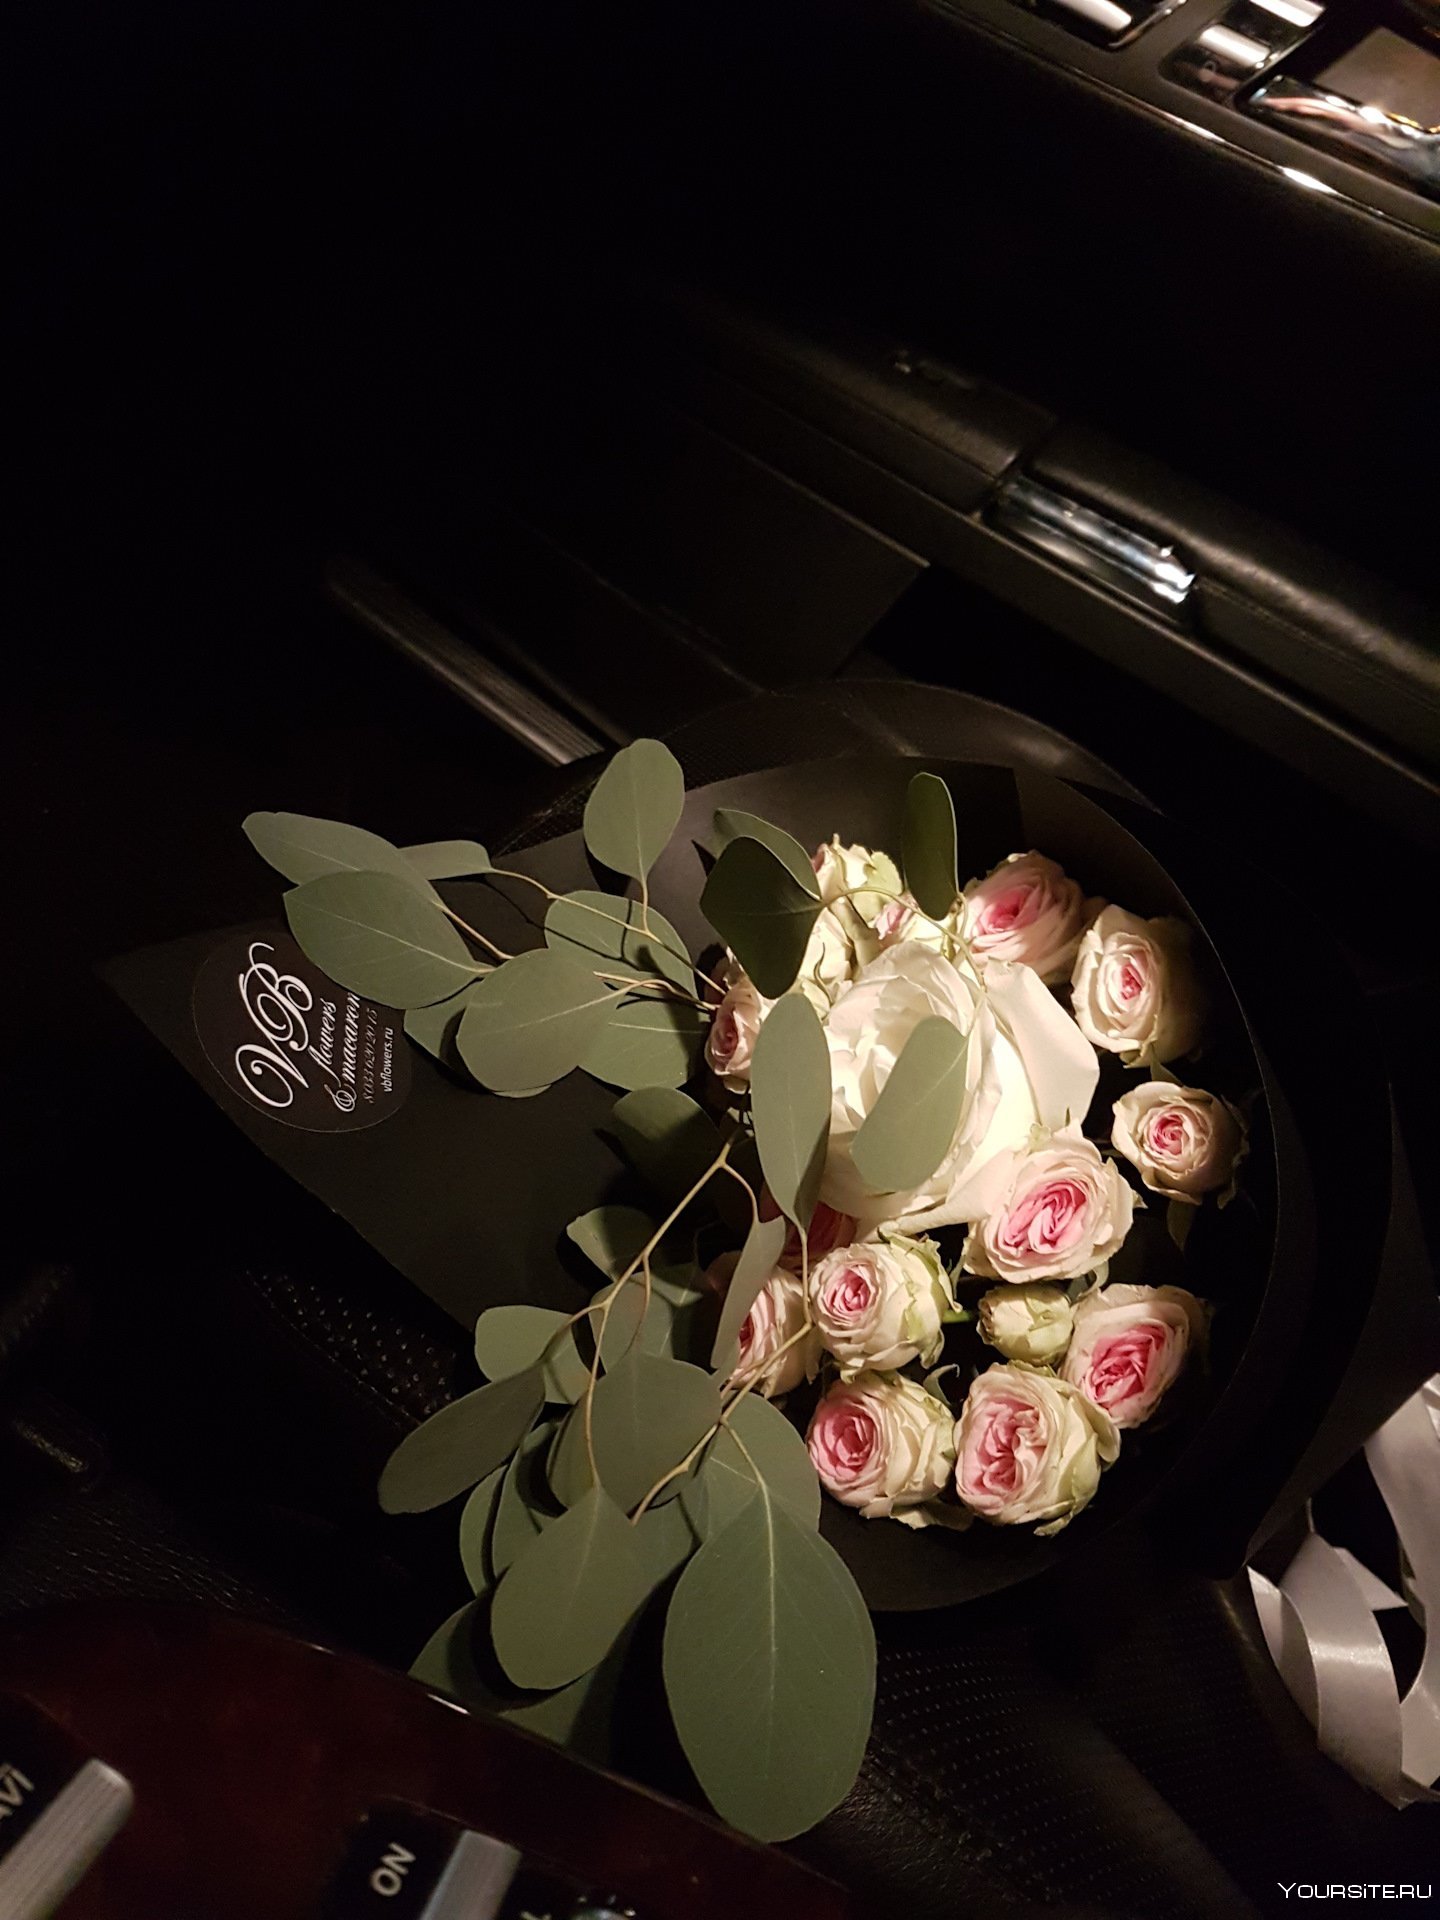 Цветы в машине фото реальные в темноте